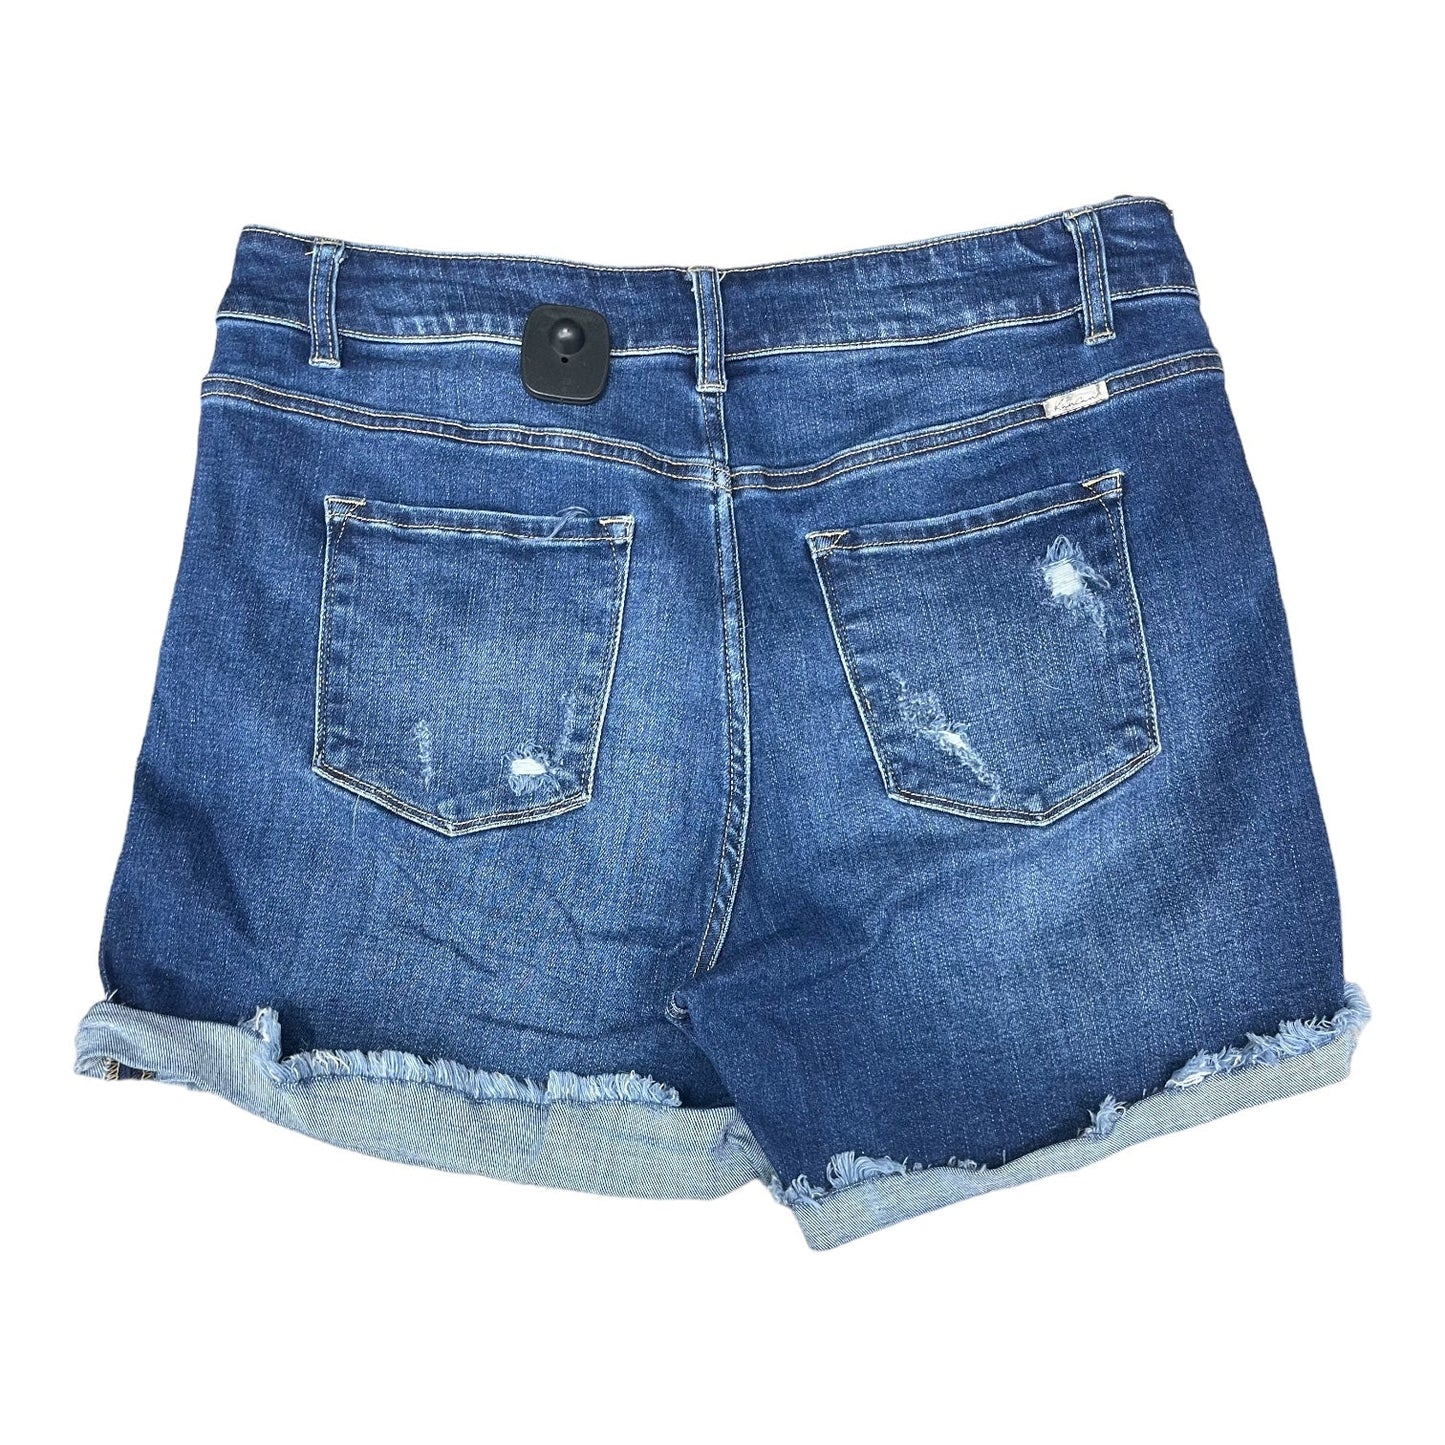 Blue Denim Shorts Kancan, Size 16